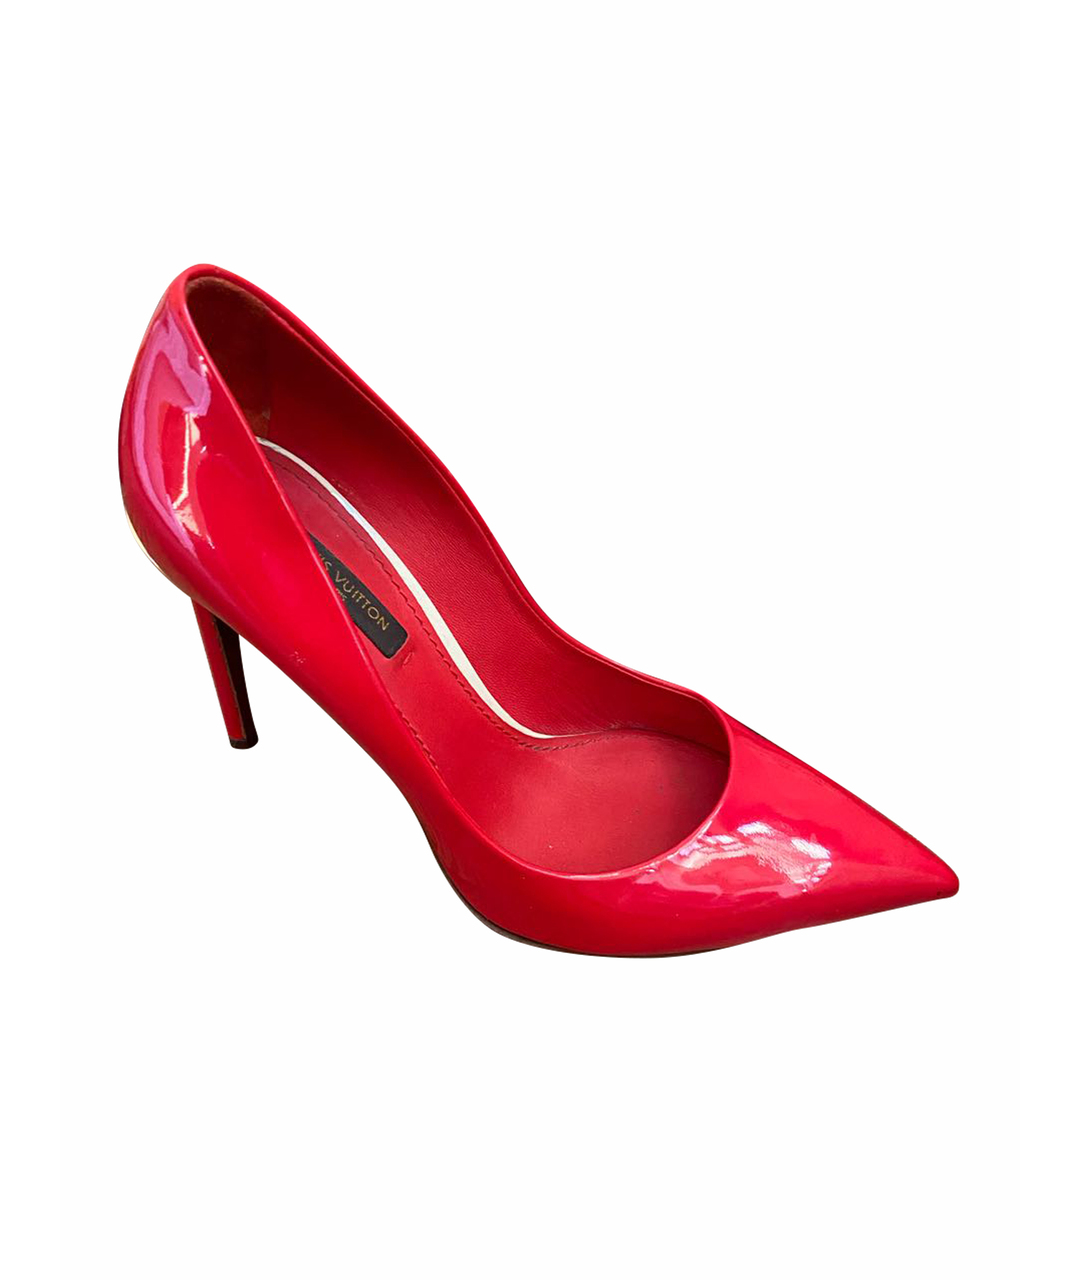 LOUIS VUITTON PRE-OWNED Красные туфли из лакированной кожи, фото 1